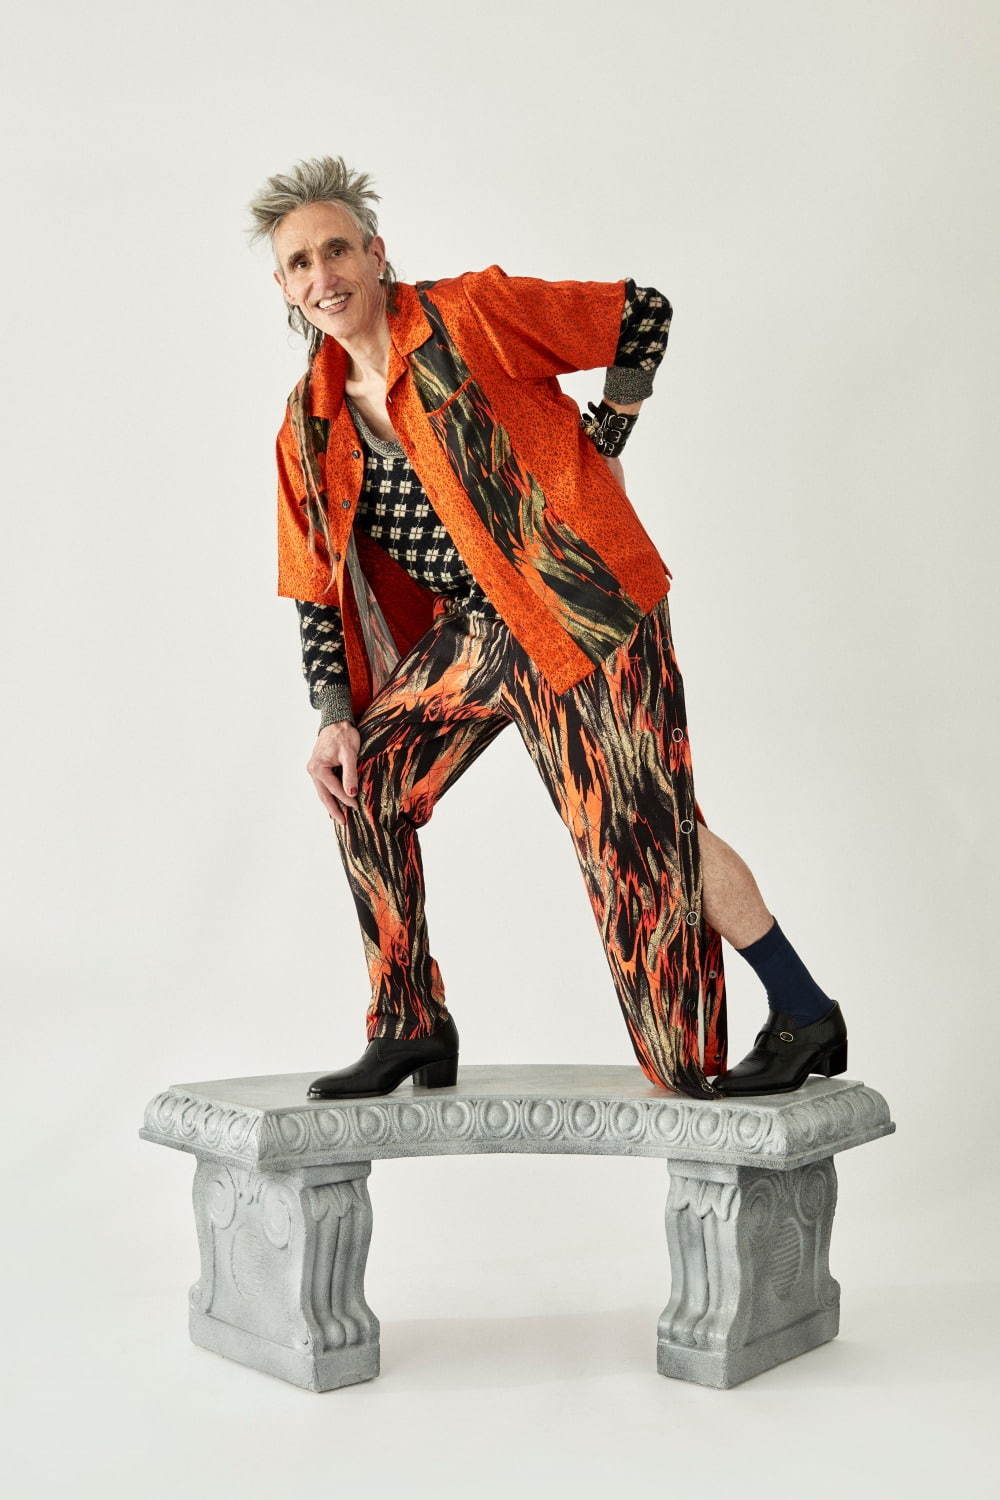 ヴィヴィアン・ウエストウッド(Vivienne Westwood) 2020-21年秋冬ウィメンズ&メンズコレクション  - 写真18